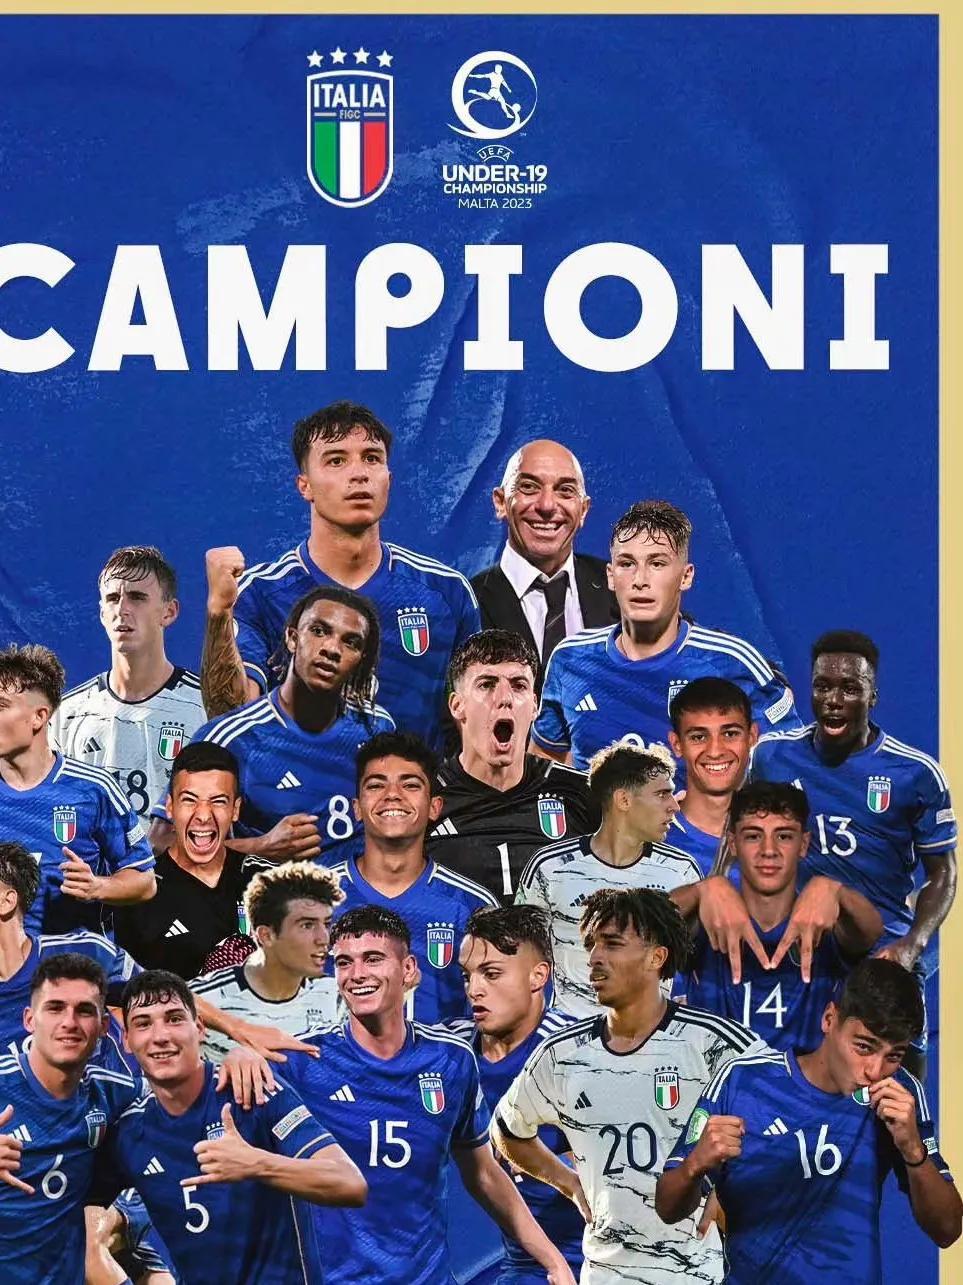 欧洲冠军，意大利队U19决赛中压倒性优势战胜葡萄牙队，让人眼前一亮，精神为之一振